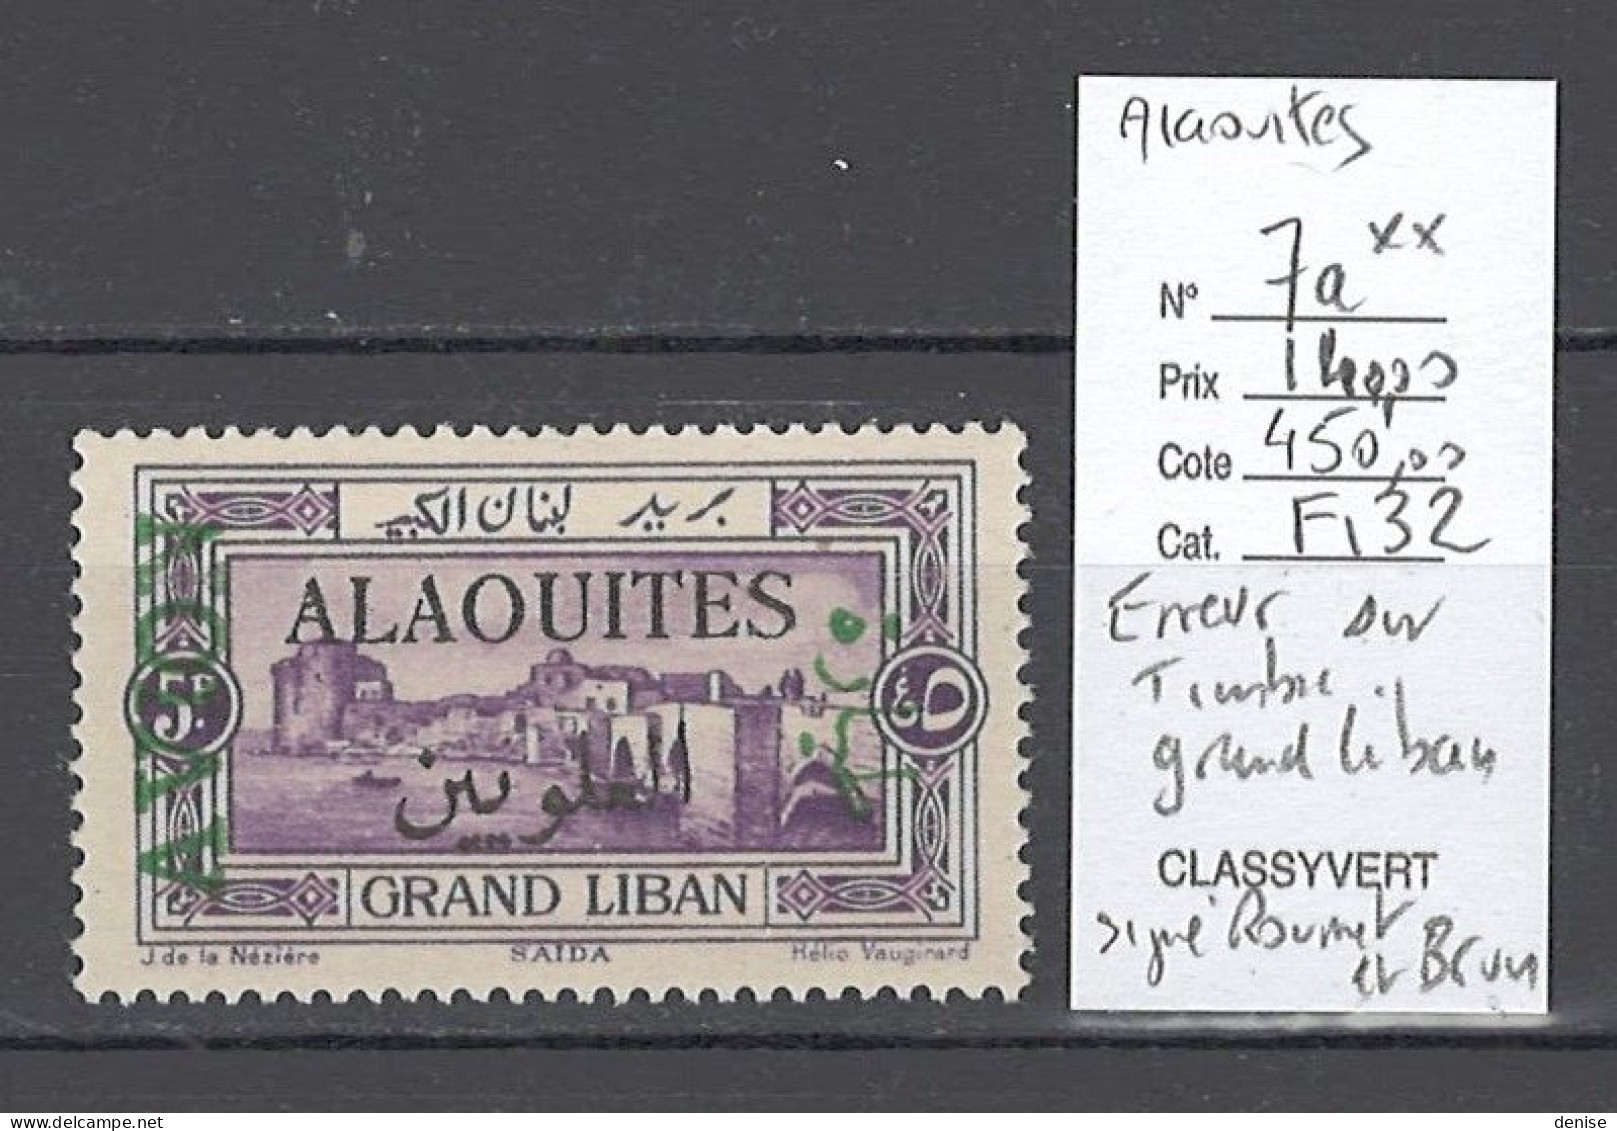 Alaouites - Yvert 7a** - ERREUR SUR TIMBRE DU GRAND LIBAN - Poste Aérienne - Unused Stamps